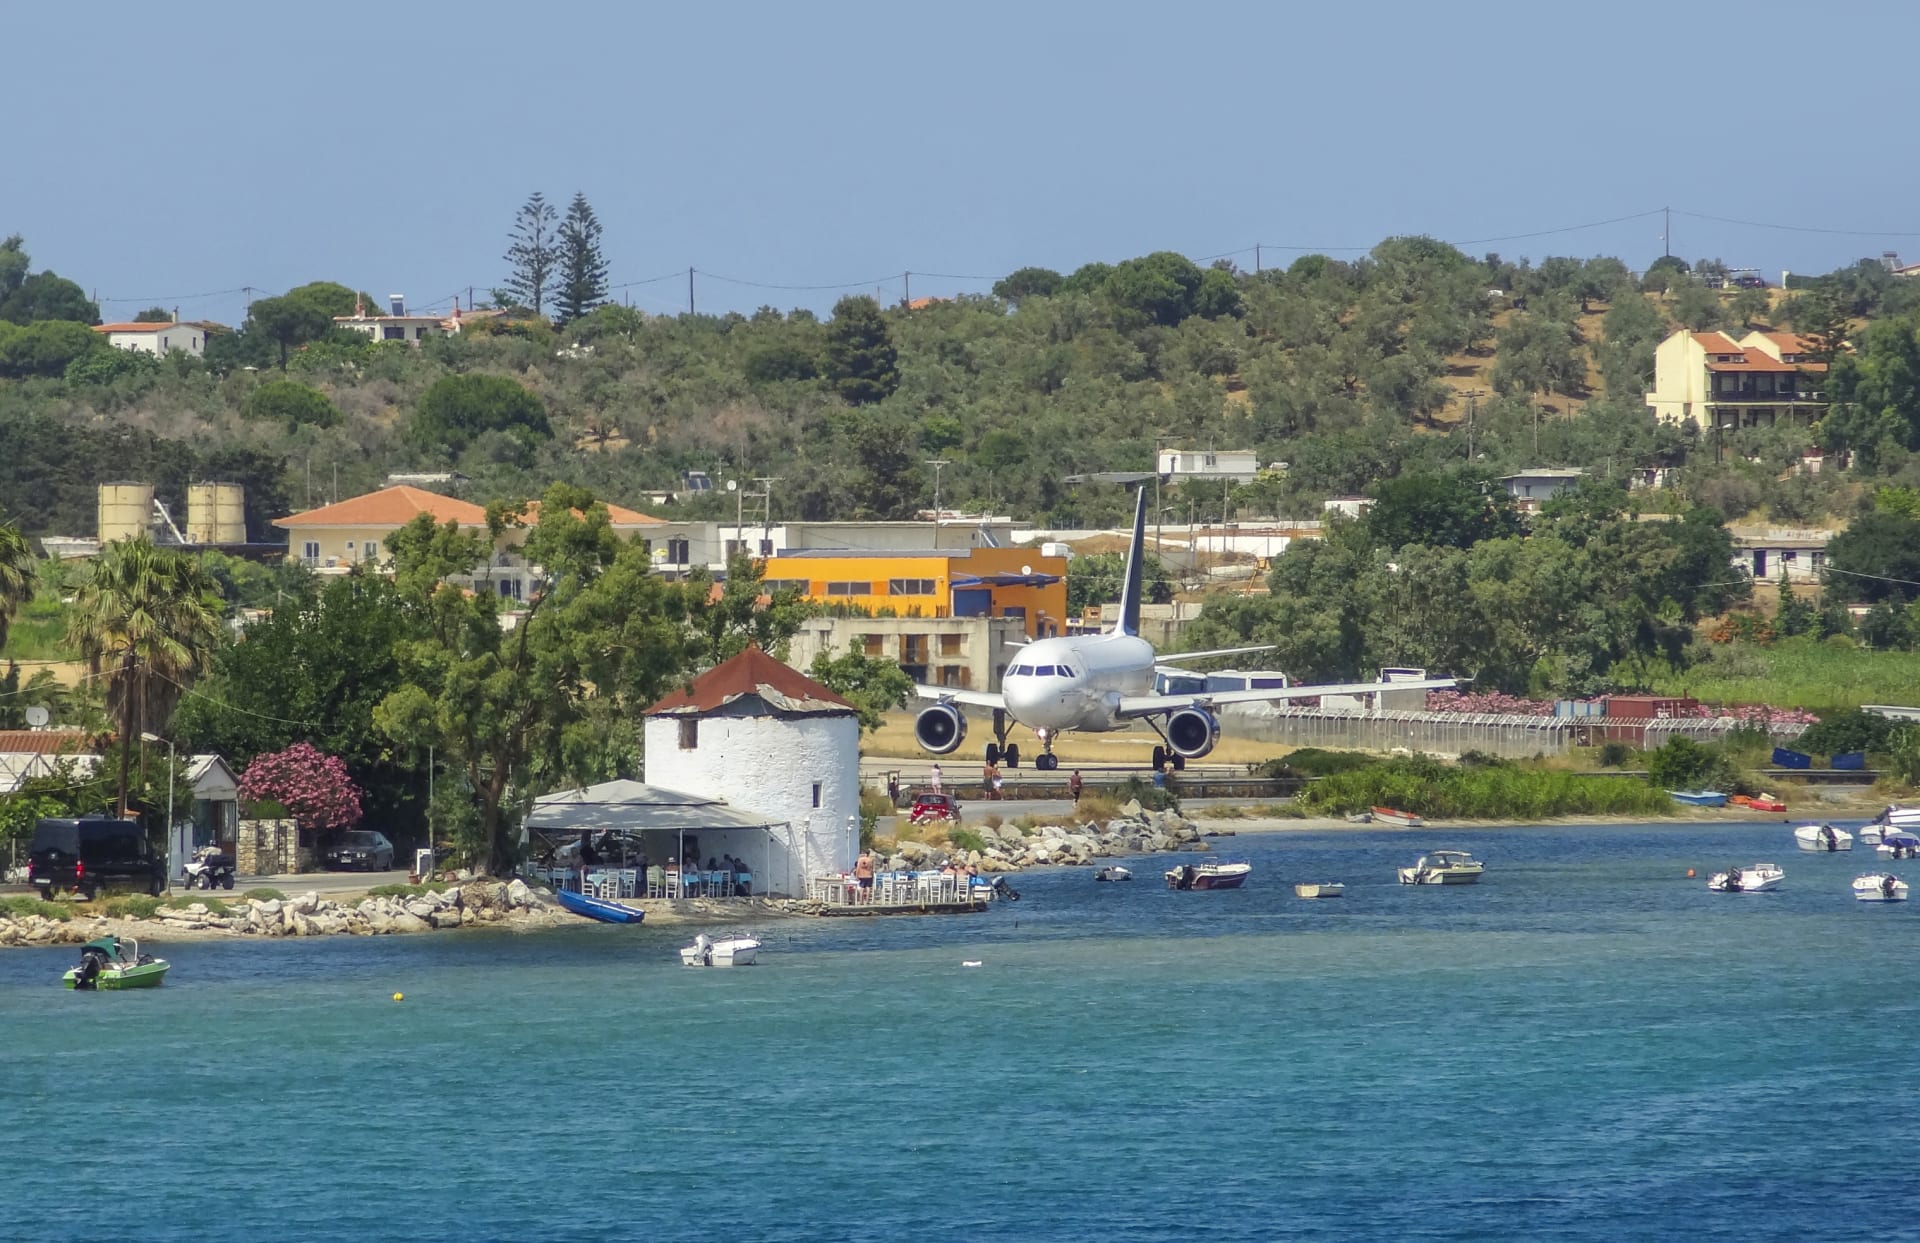 Velmi nízké přelety letadel jsou jednou z vyhledávaných turistických atrakcí na ostrově Skiathos.